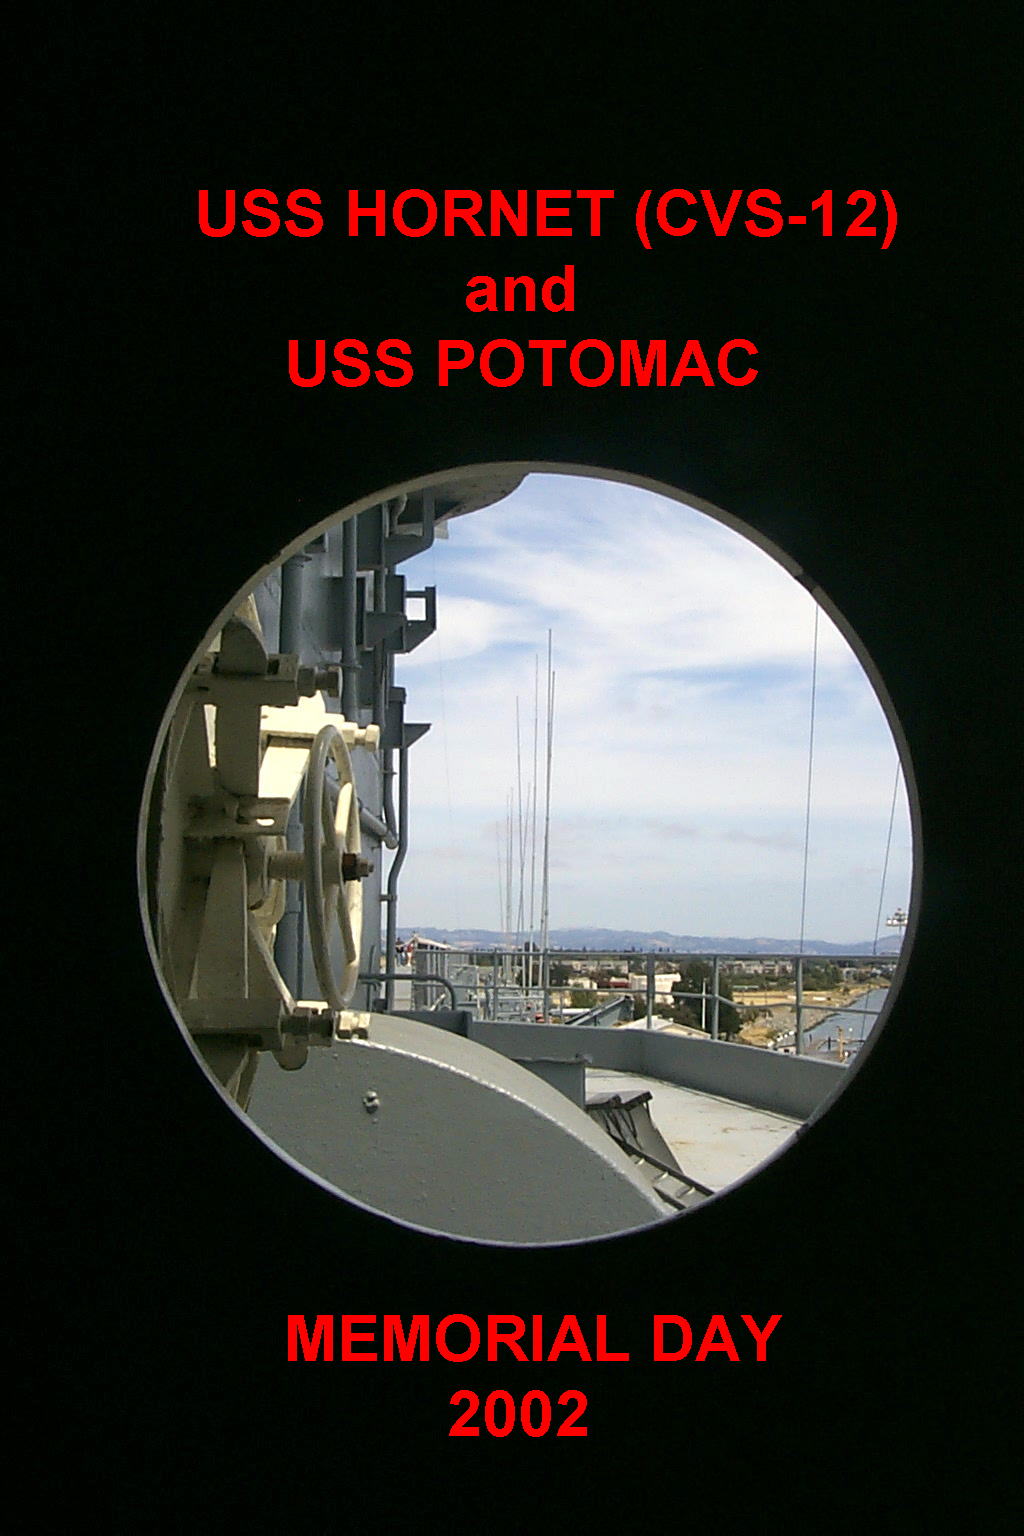 The USS Hornett CVS-12 in Alameda, CA